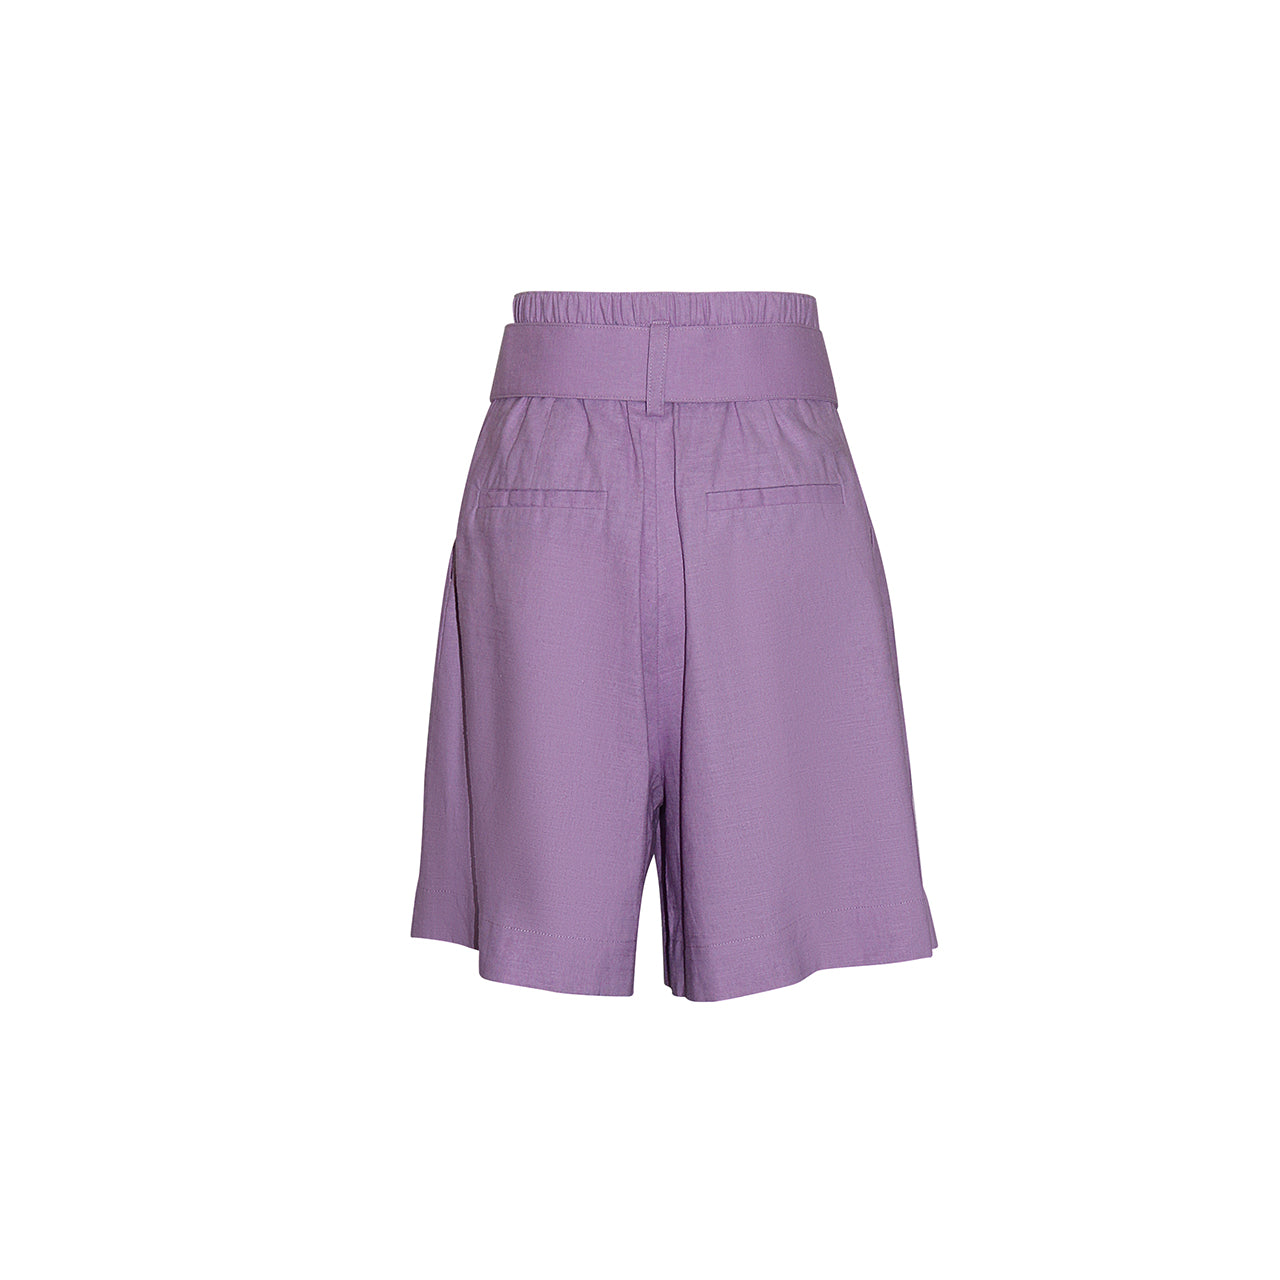 Stylish "NOVA" Cotton Linen Shorts in Pastel Violet by Gosia Orlowska